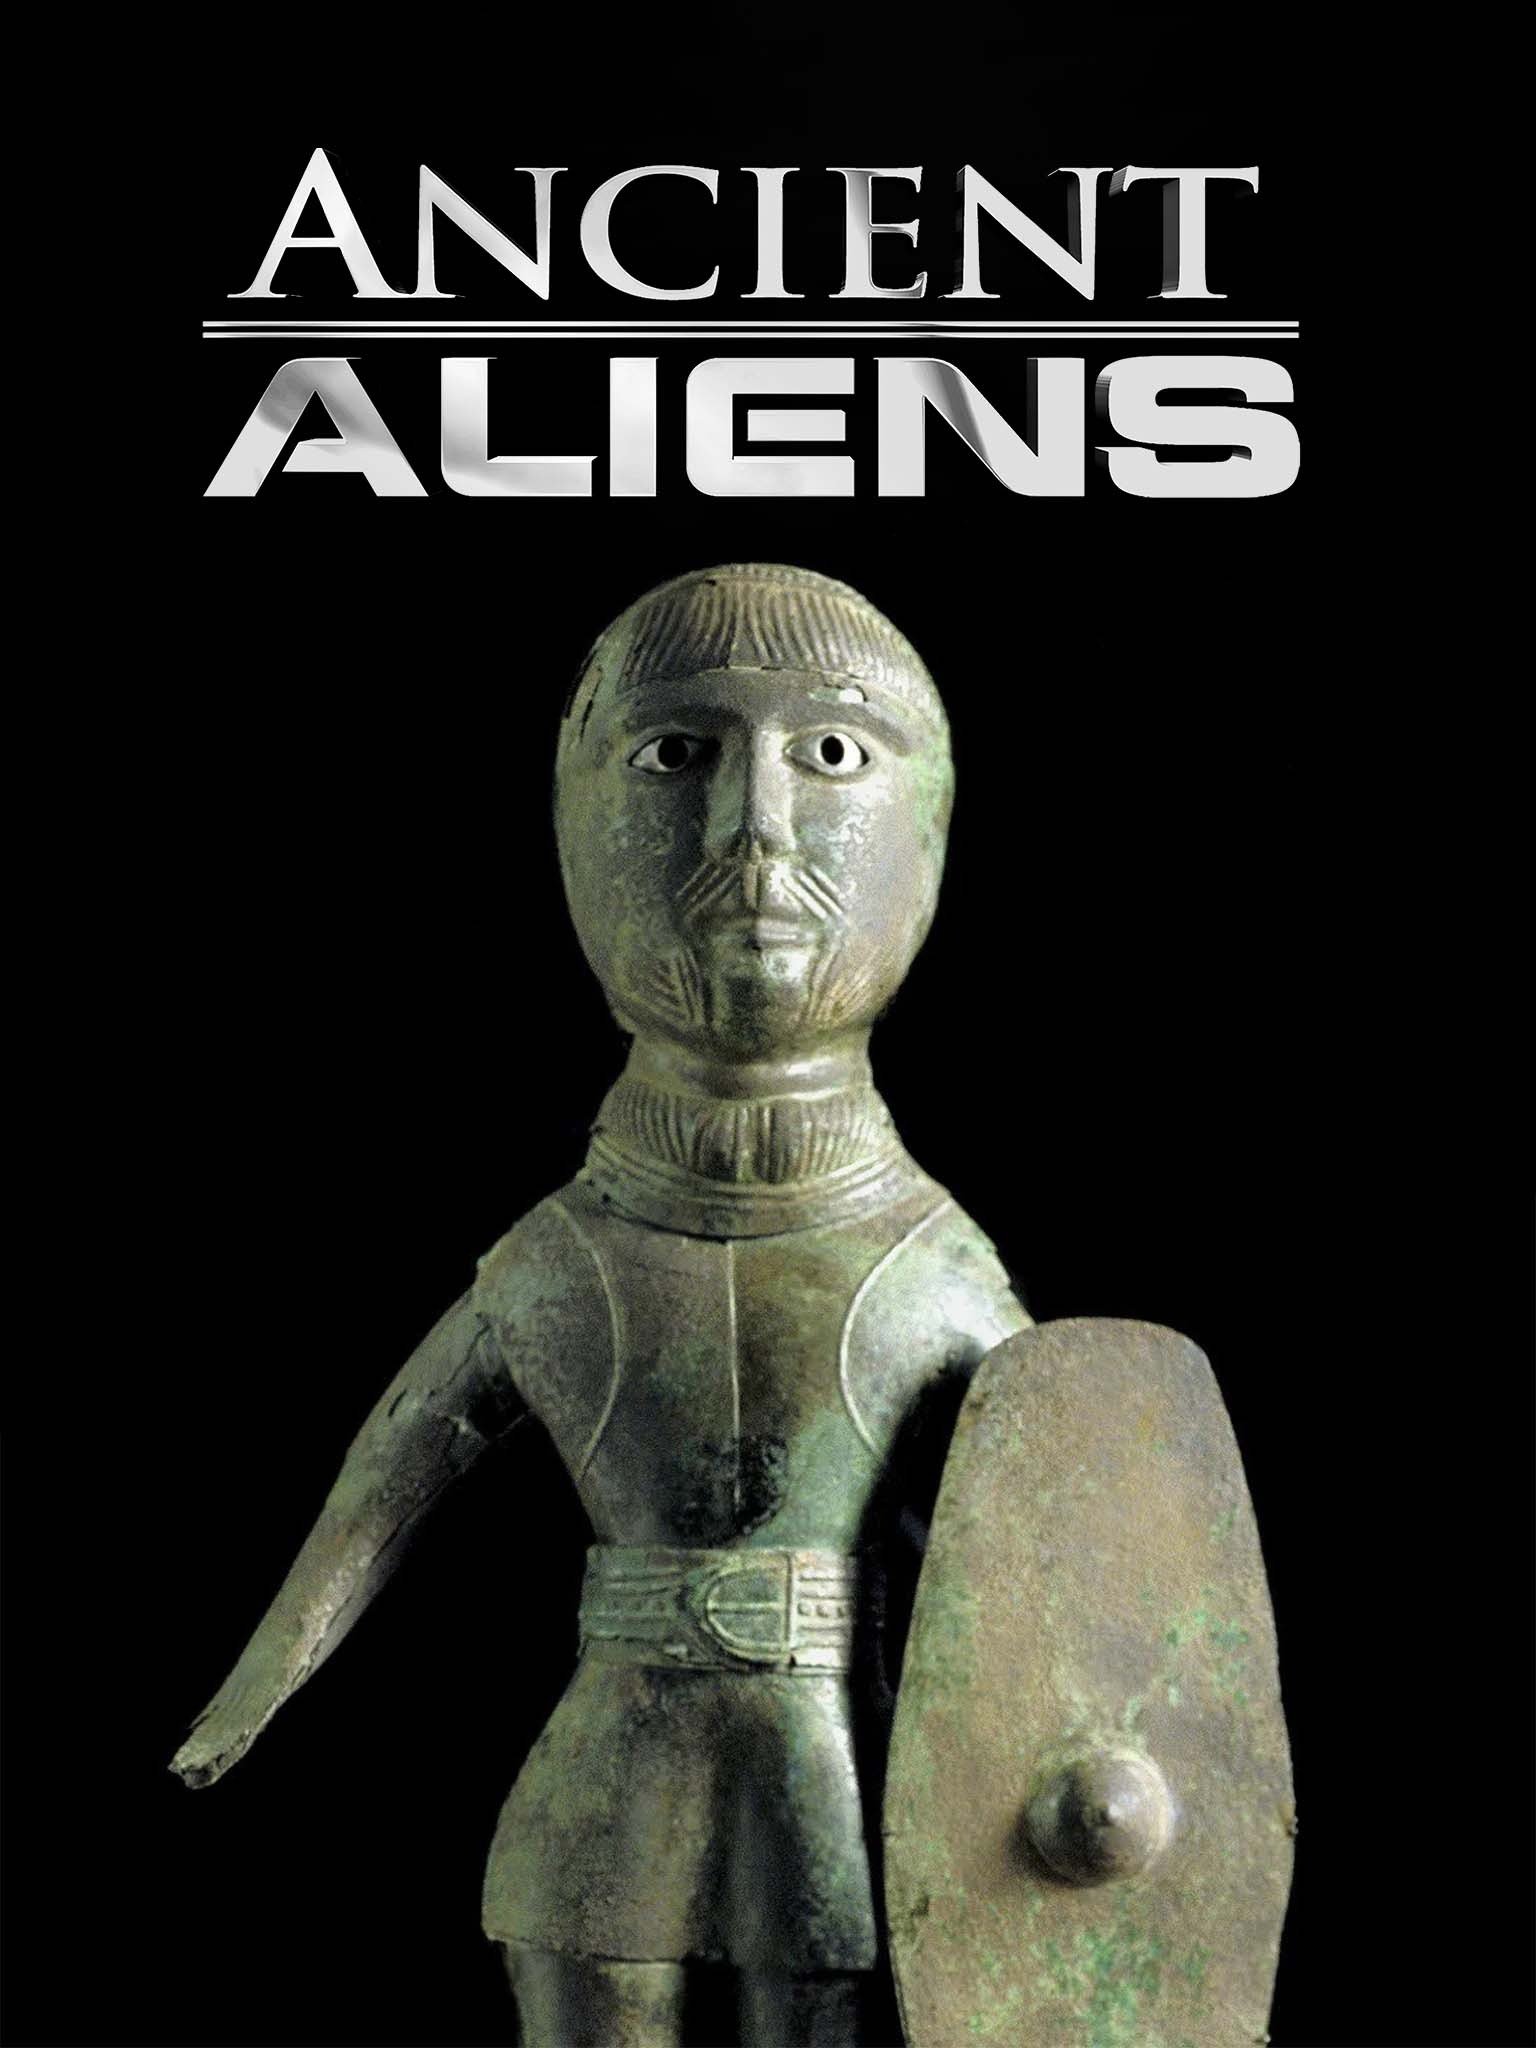 ancient aliens season 14 dvd release date